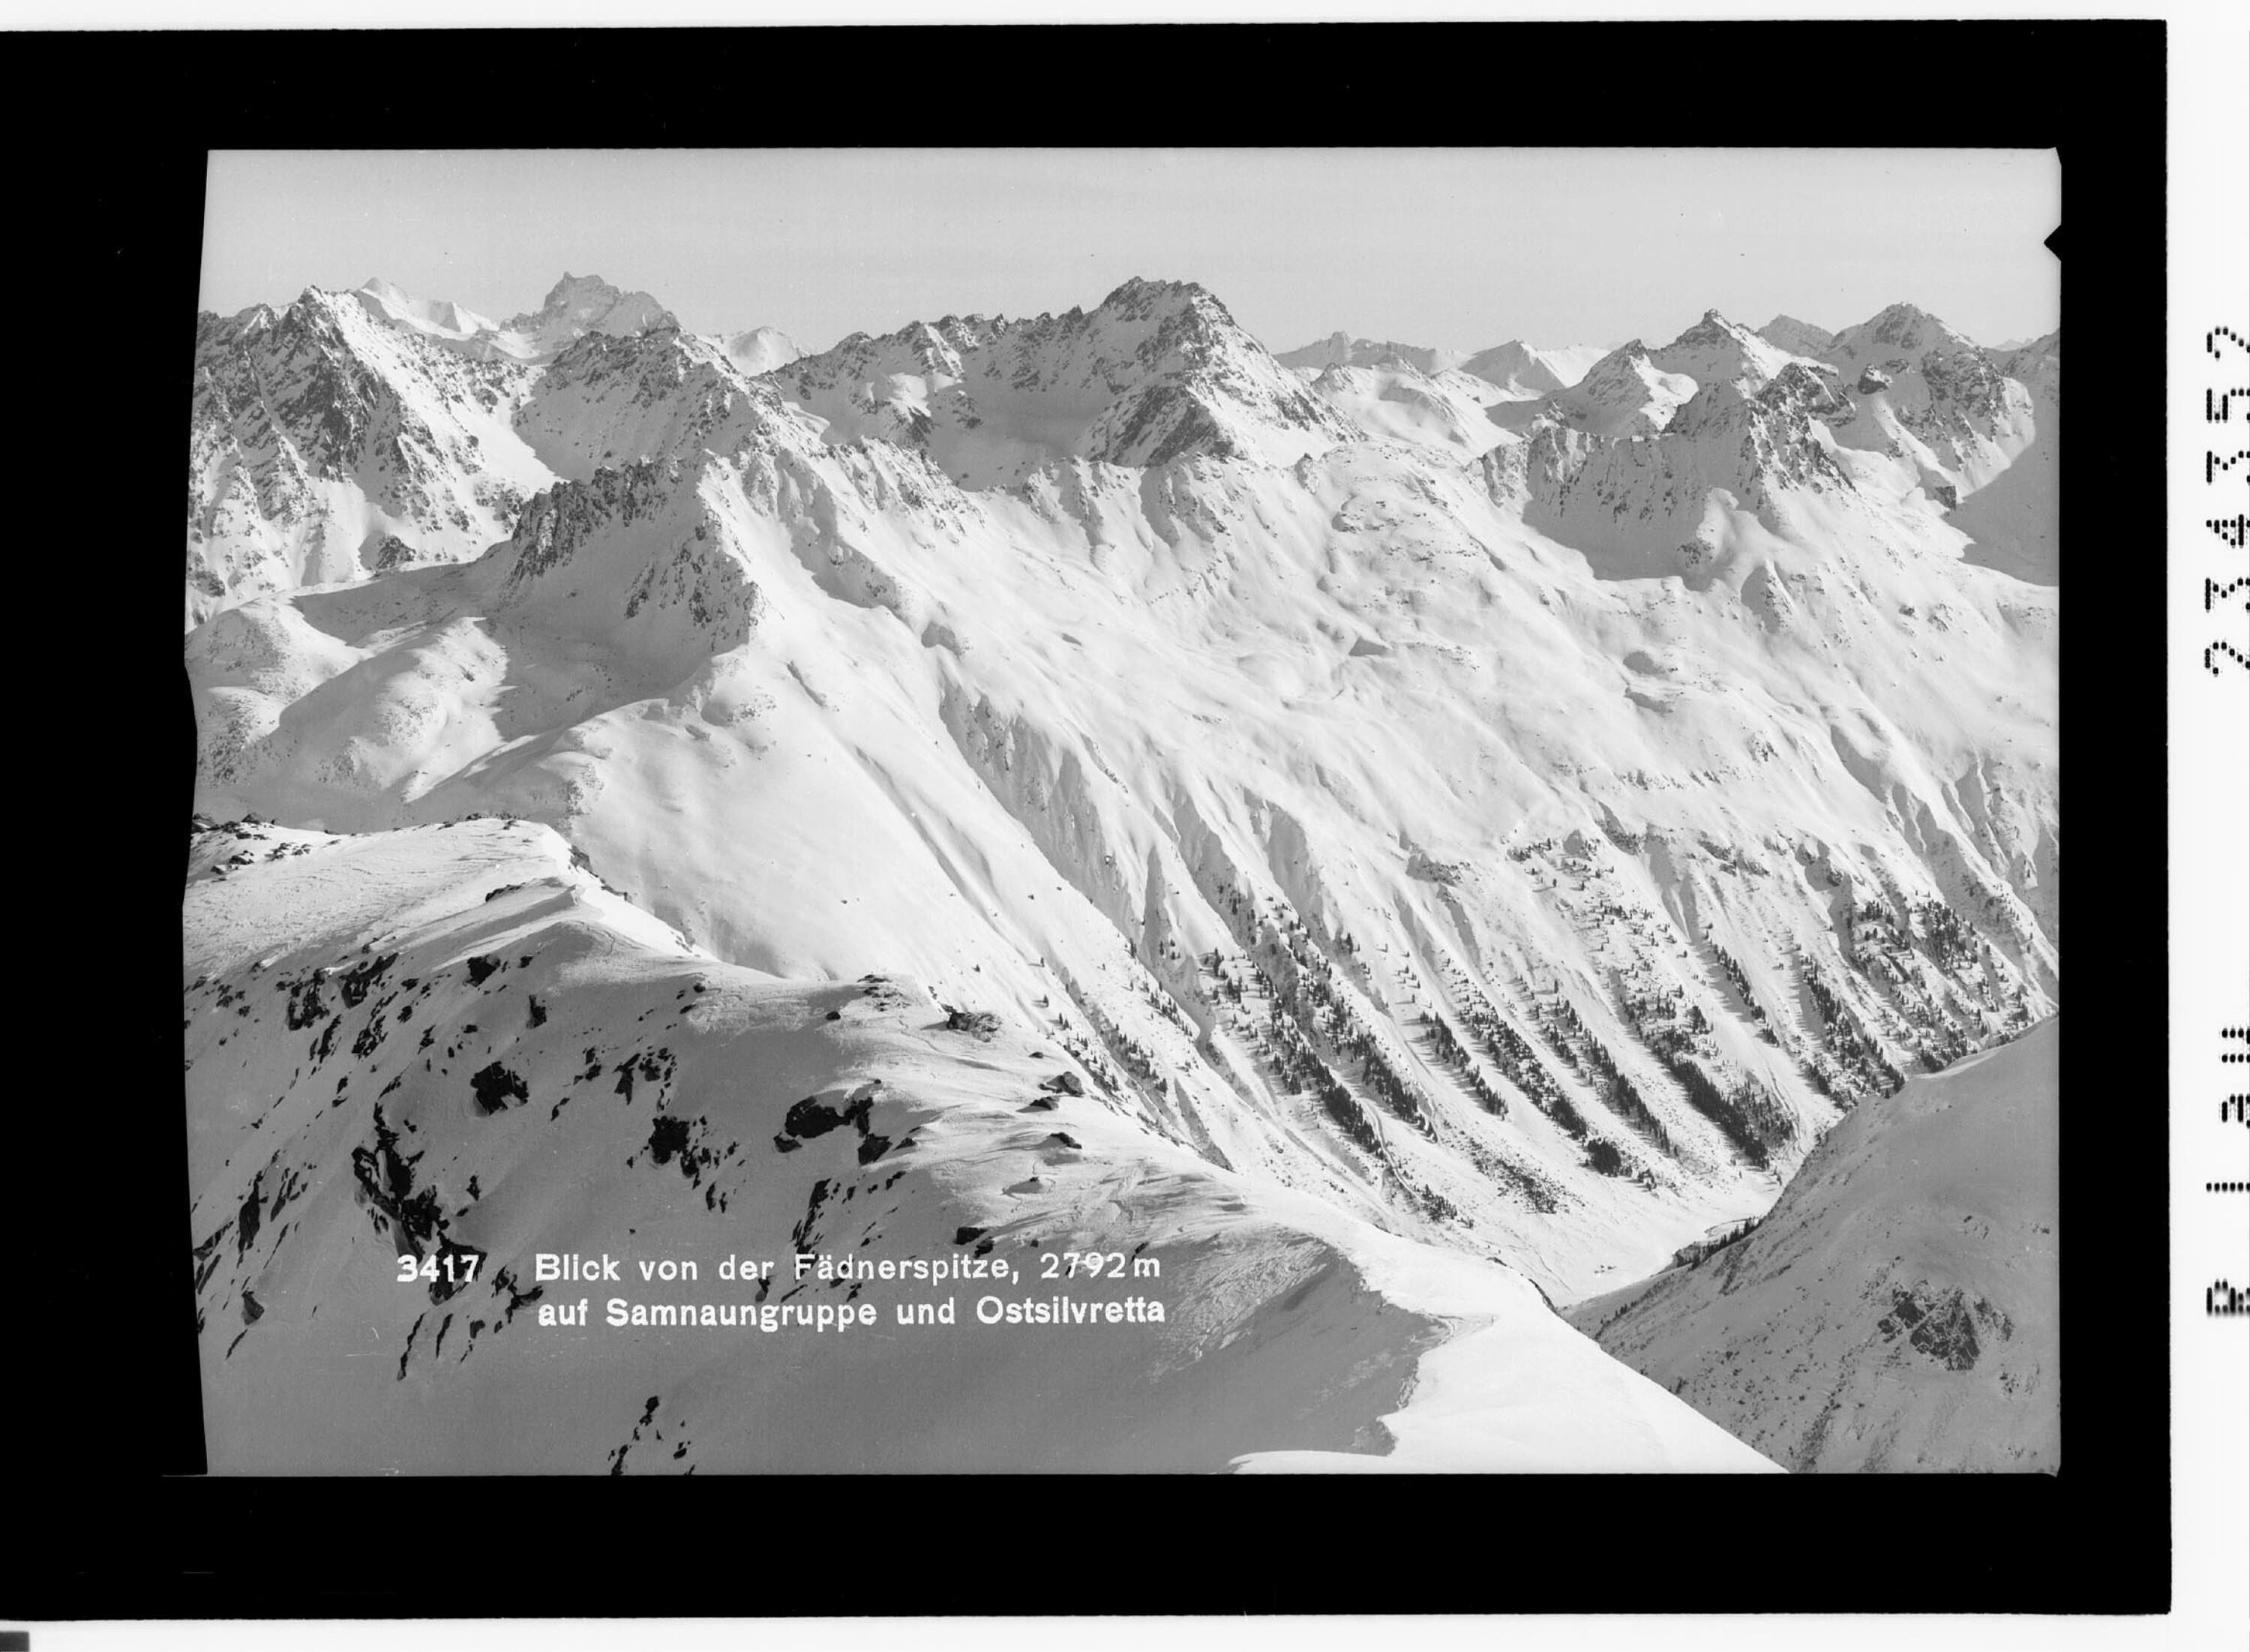 Blick von der Fädnerspitze 2792 m auf Samnaungruppe und Ostsilvretta></div>


    <hr>
    <div class=